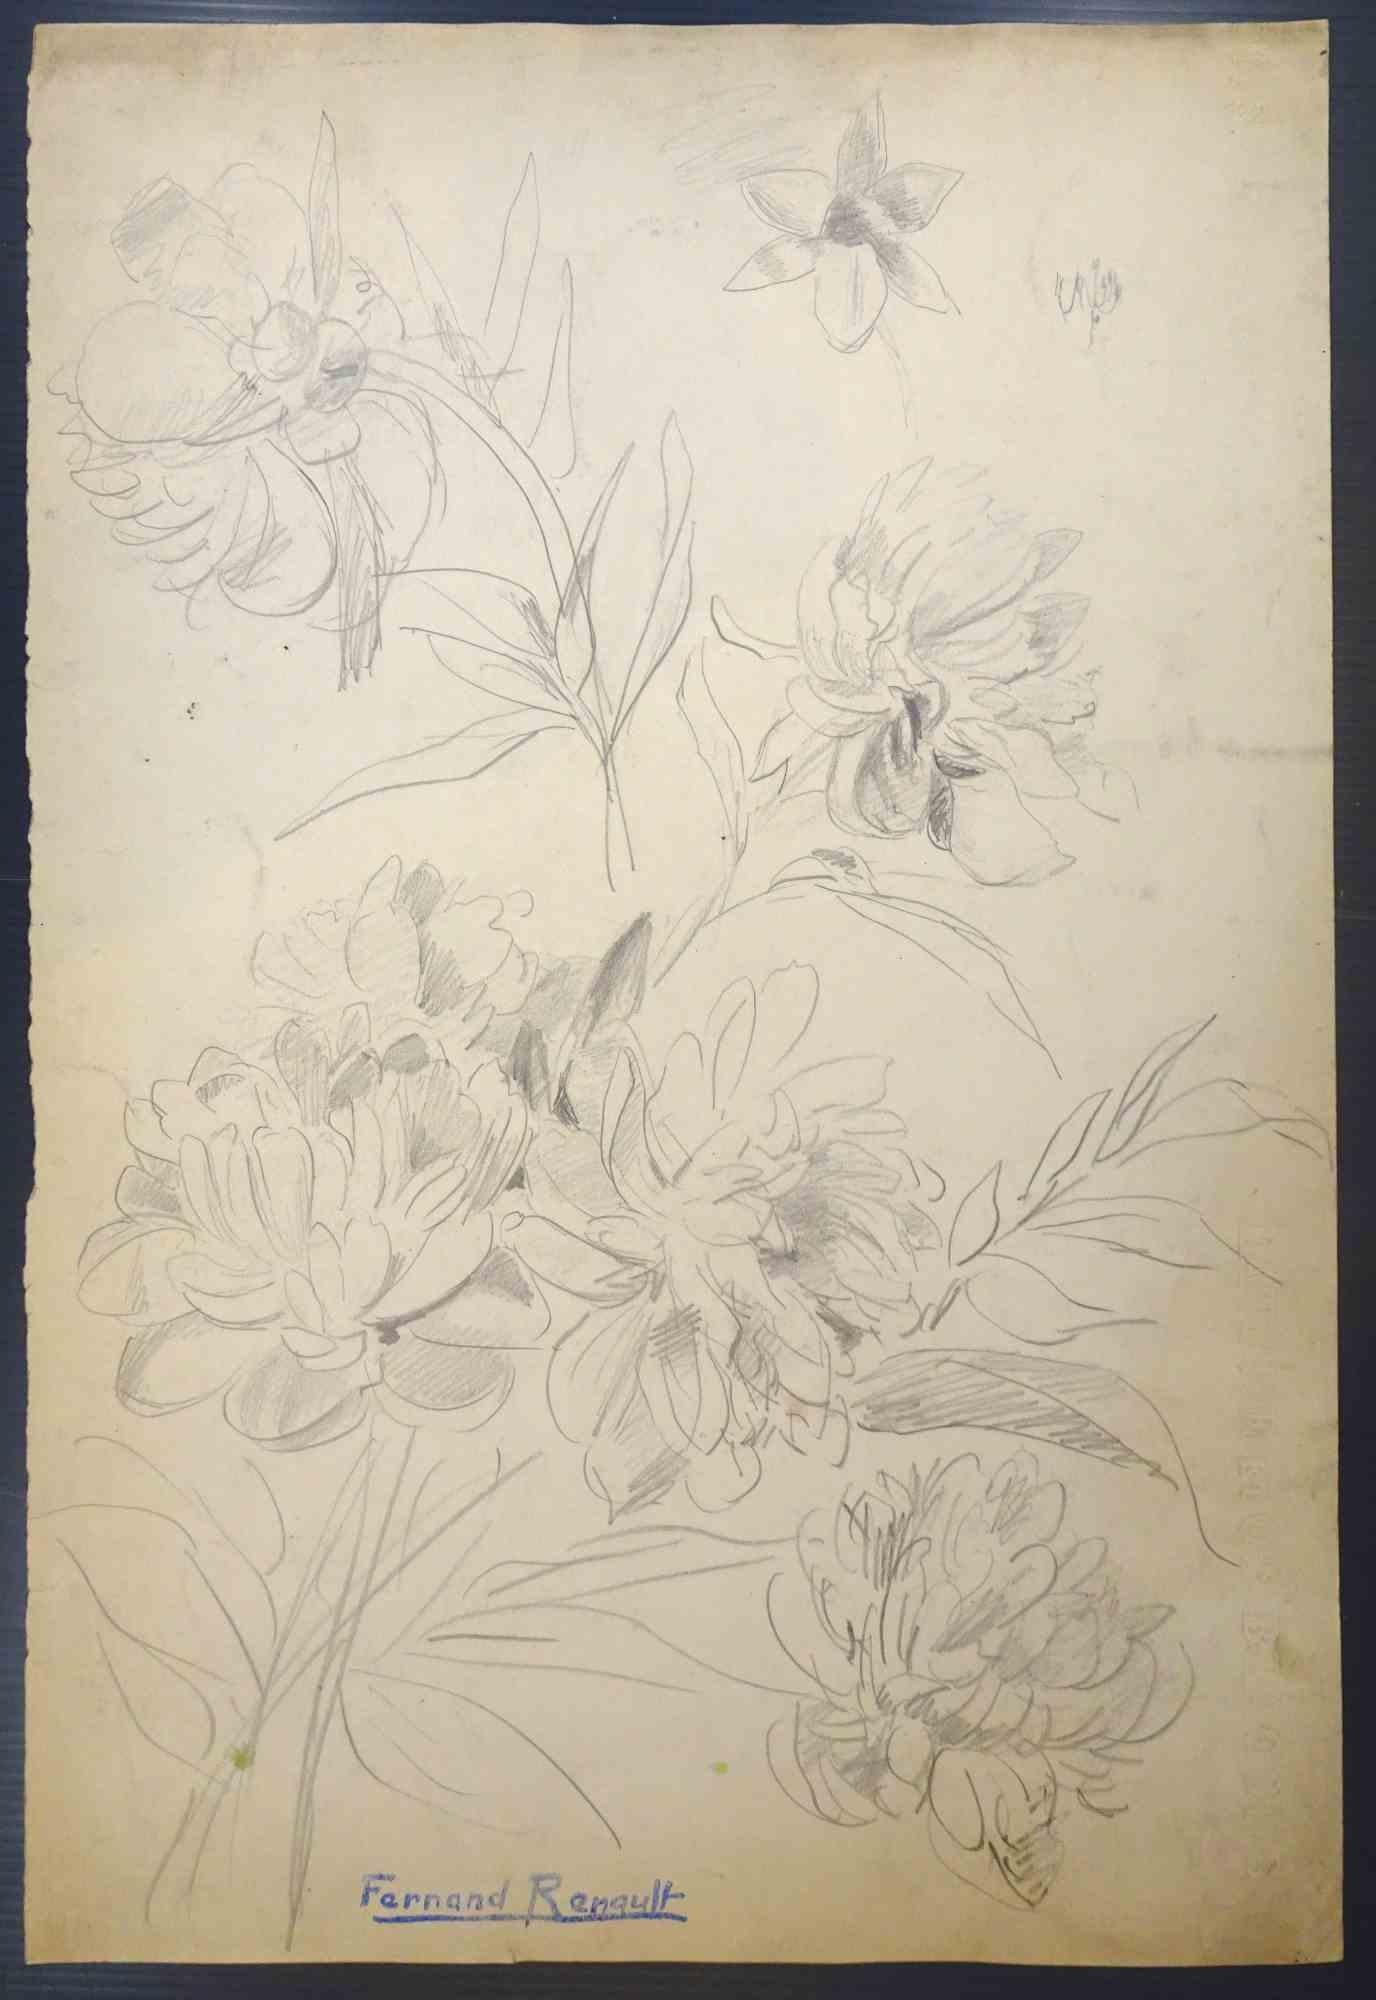 Blumen ist eine Zeichnung von Albert Fernand-Renault aus dem frühen 20. Jahrhundert.

Bleistift auf Papier.

Gestempelt und signiert.

Guter Zustand mit diffusen Stockflecken.

Das Kunstwerk ist durch zarte und weiche Striche, gut schraffiert in